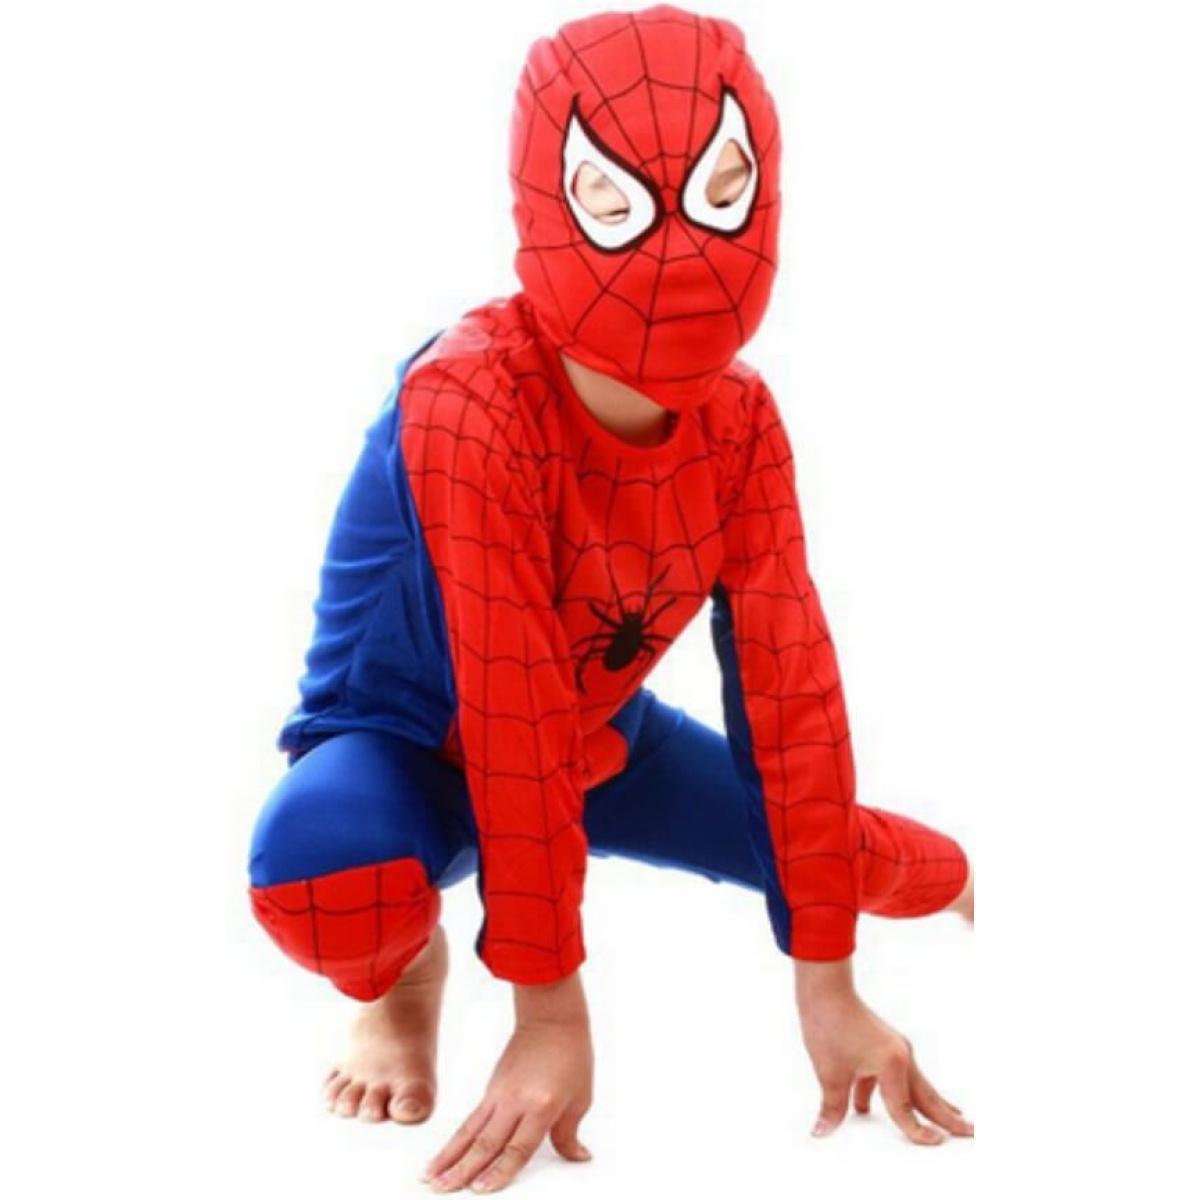 Αποκριάτικη Παιδική Στολή Spiderman Μέγεθος M Ηλικία 4-6 Ετών Ύψος